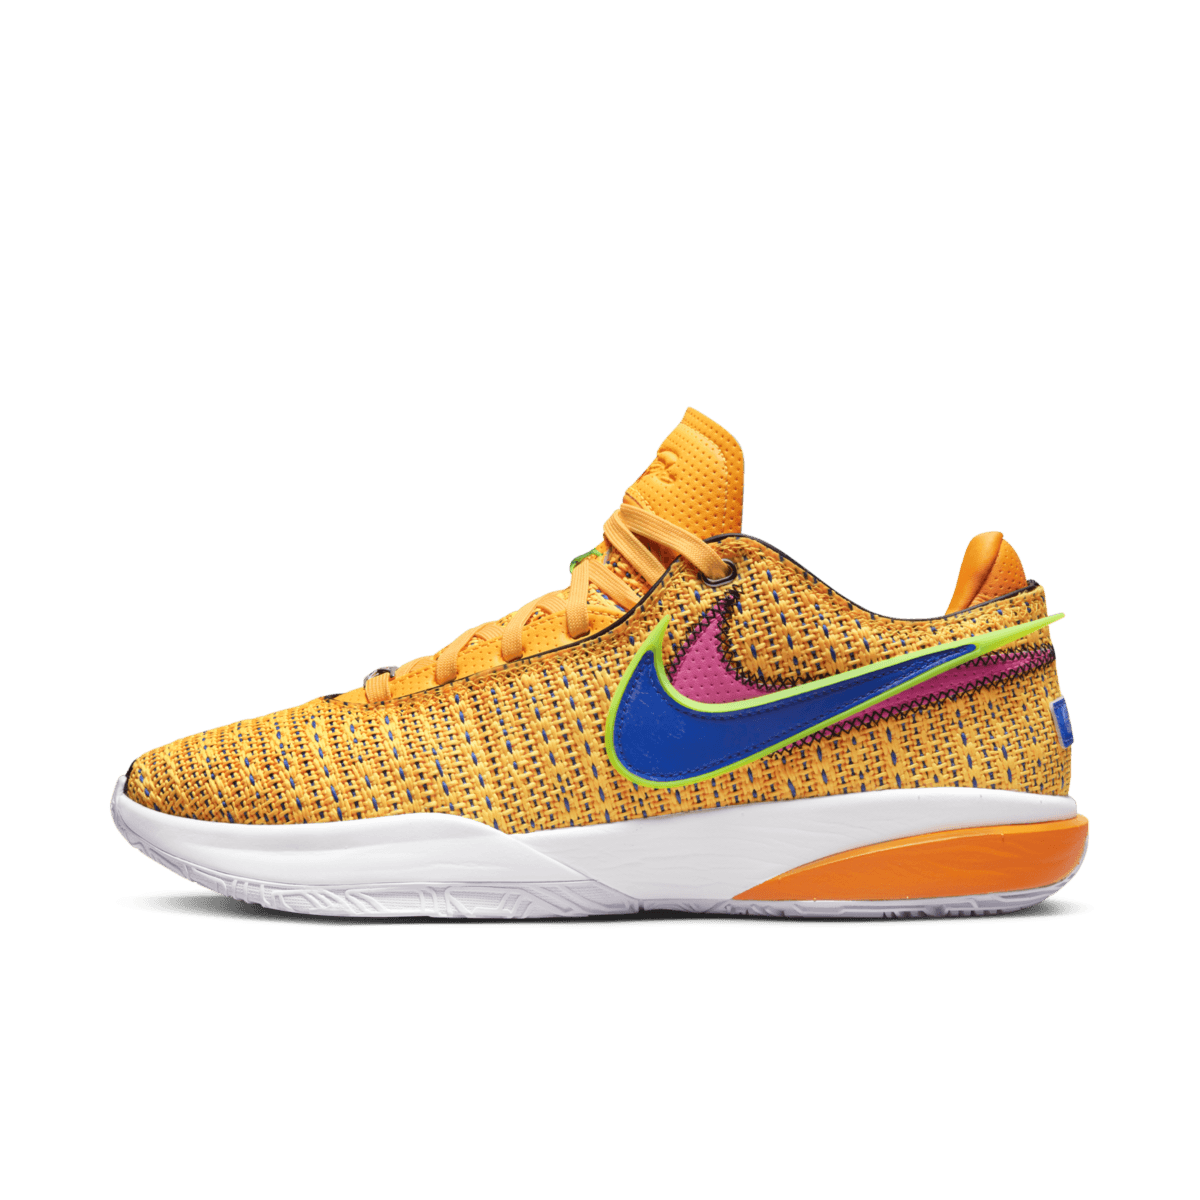 Nike LeBron 10 'Laser Orange' DJ5423-801